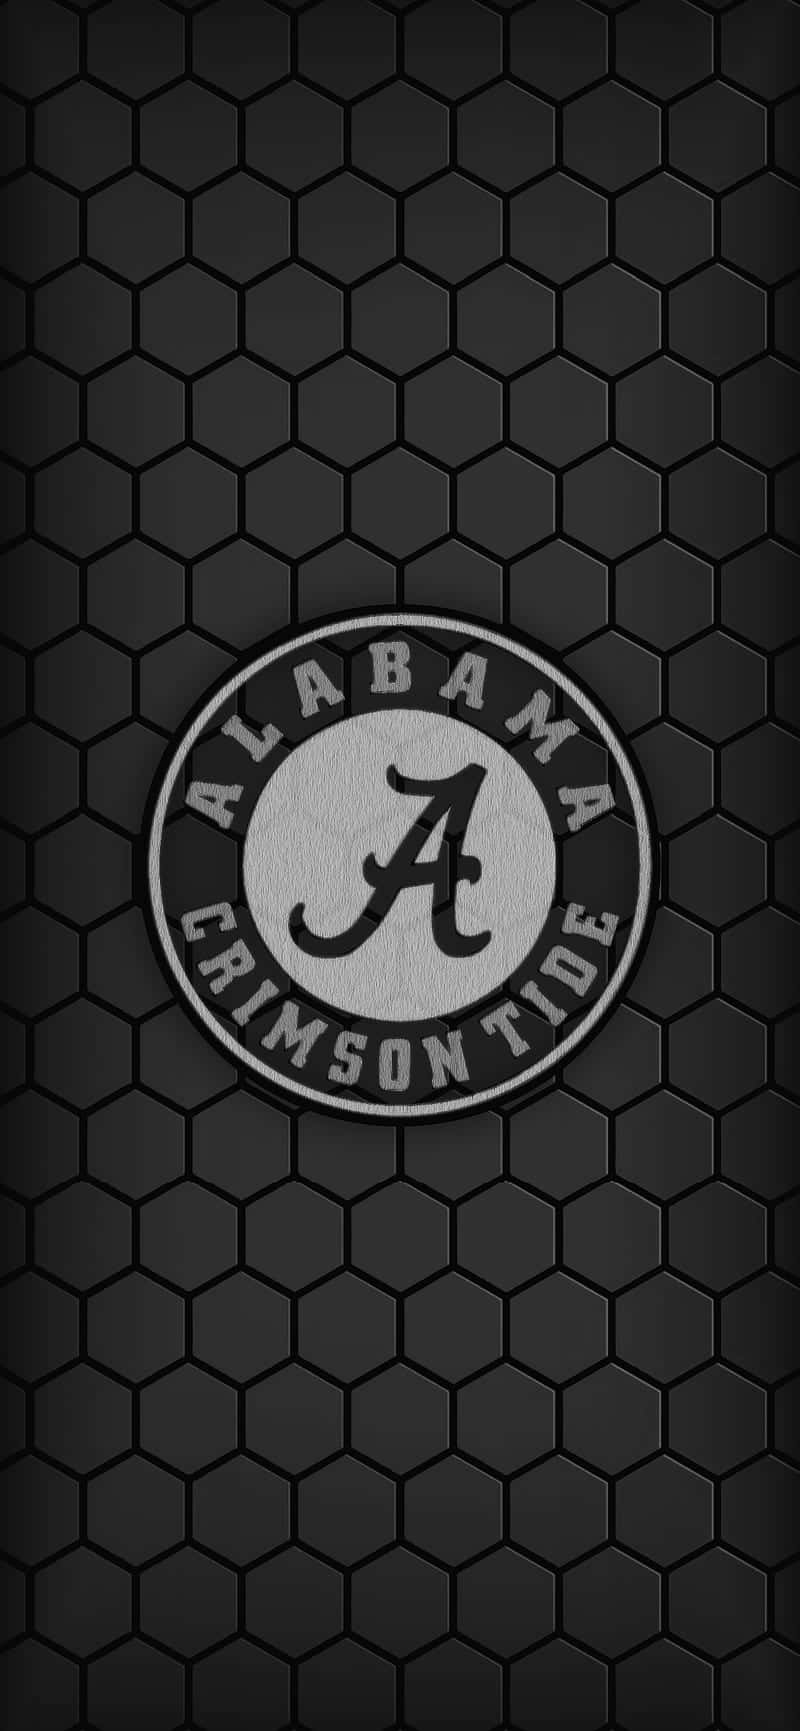 ¡rolltide! Fondos De Pantalla De Fútbol De Alabama Para Iphone. Fondo de pantalla